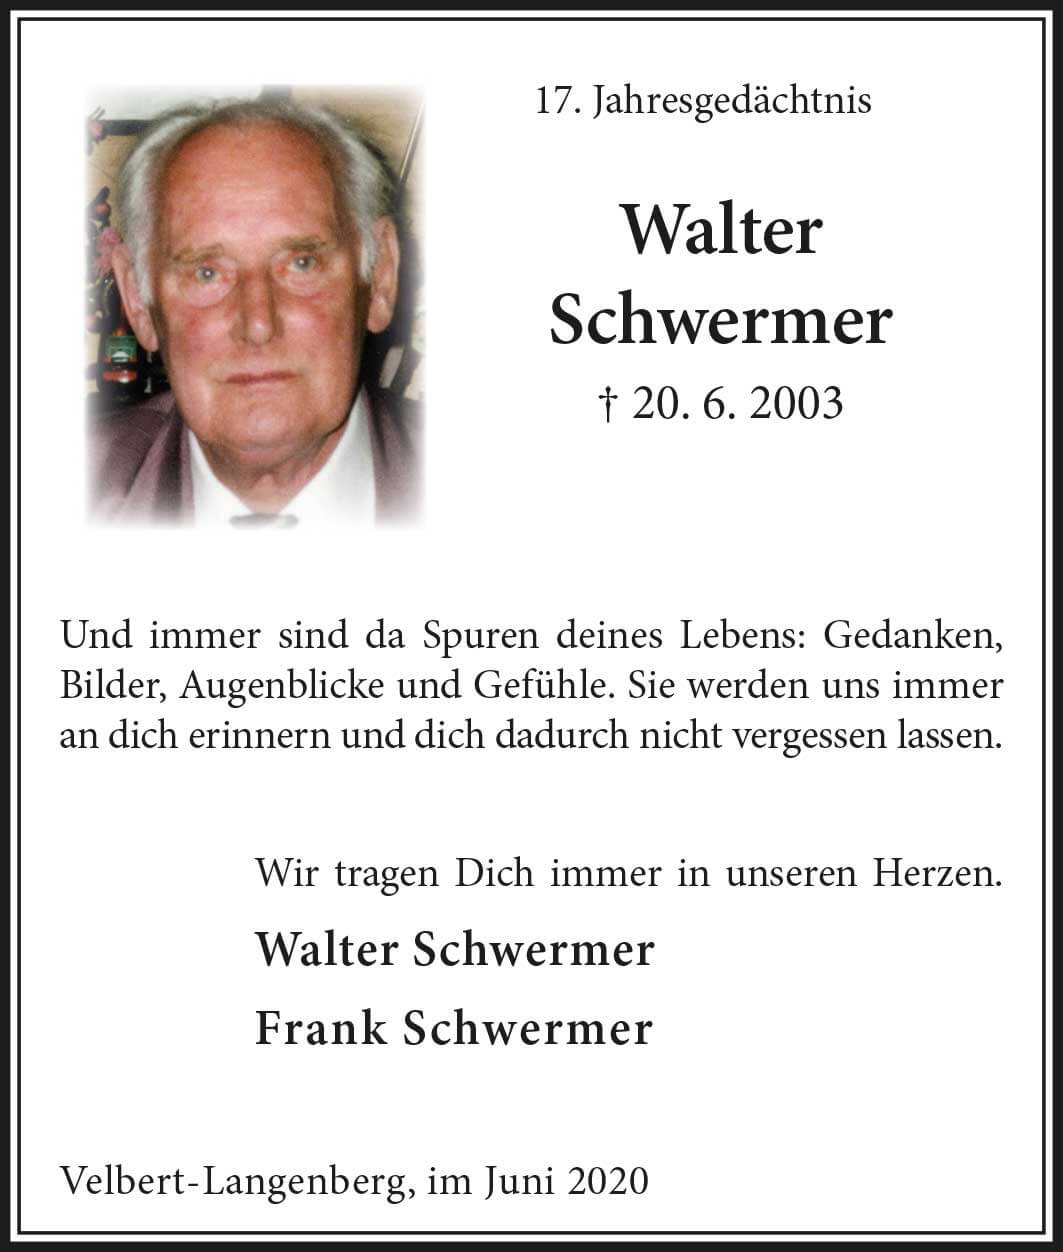 Walter Schwermer -Jahresgedächtnis-